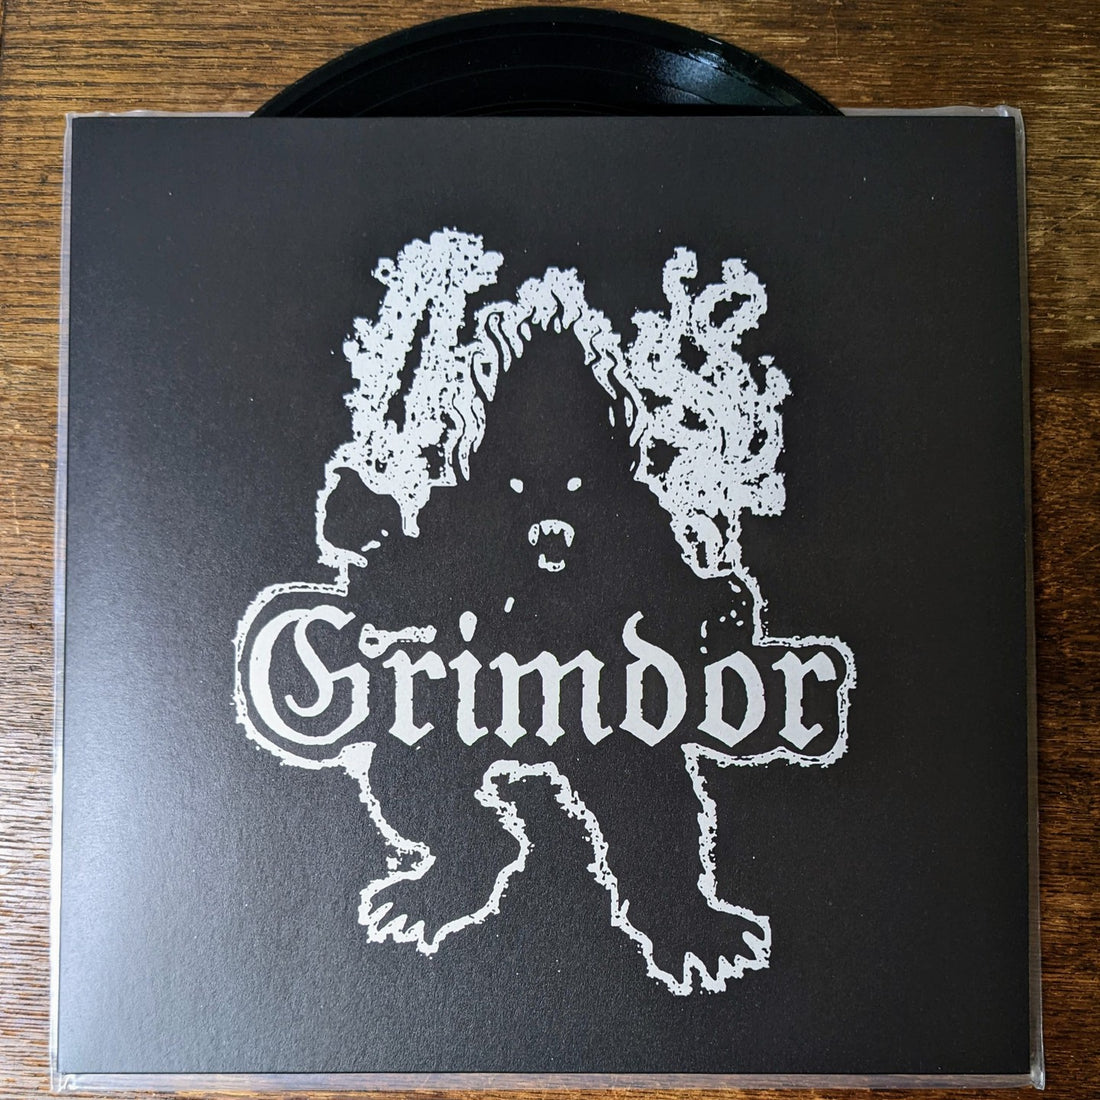 Grimdor LP!